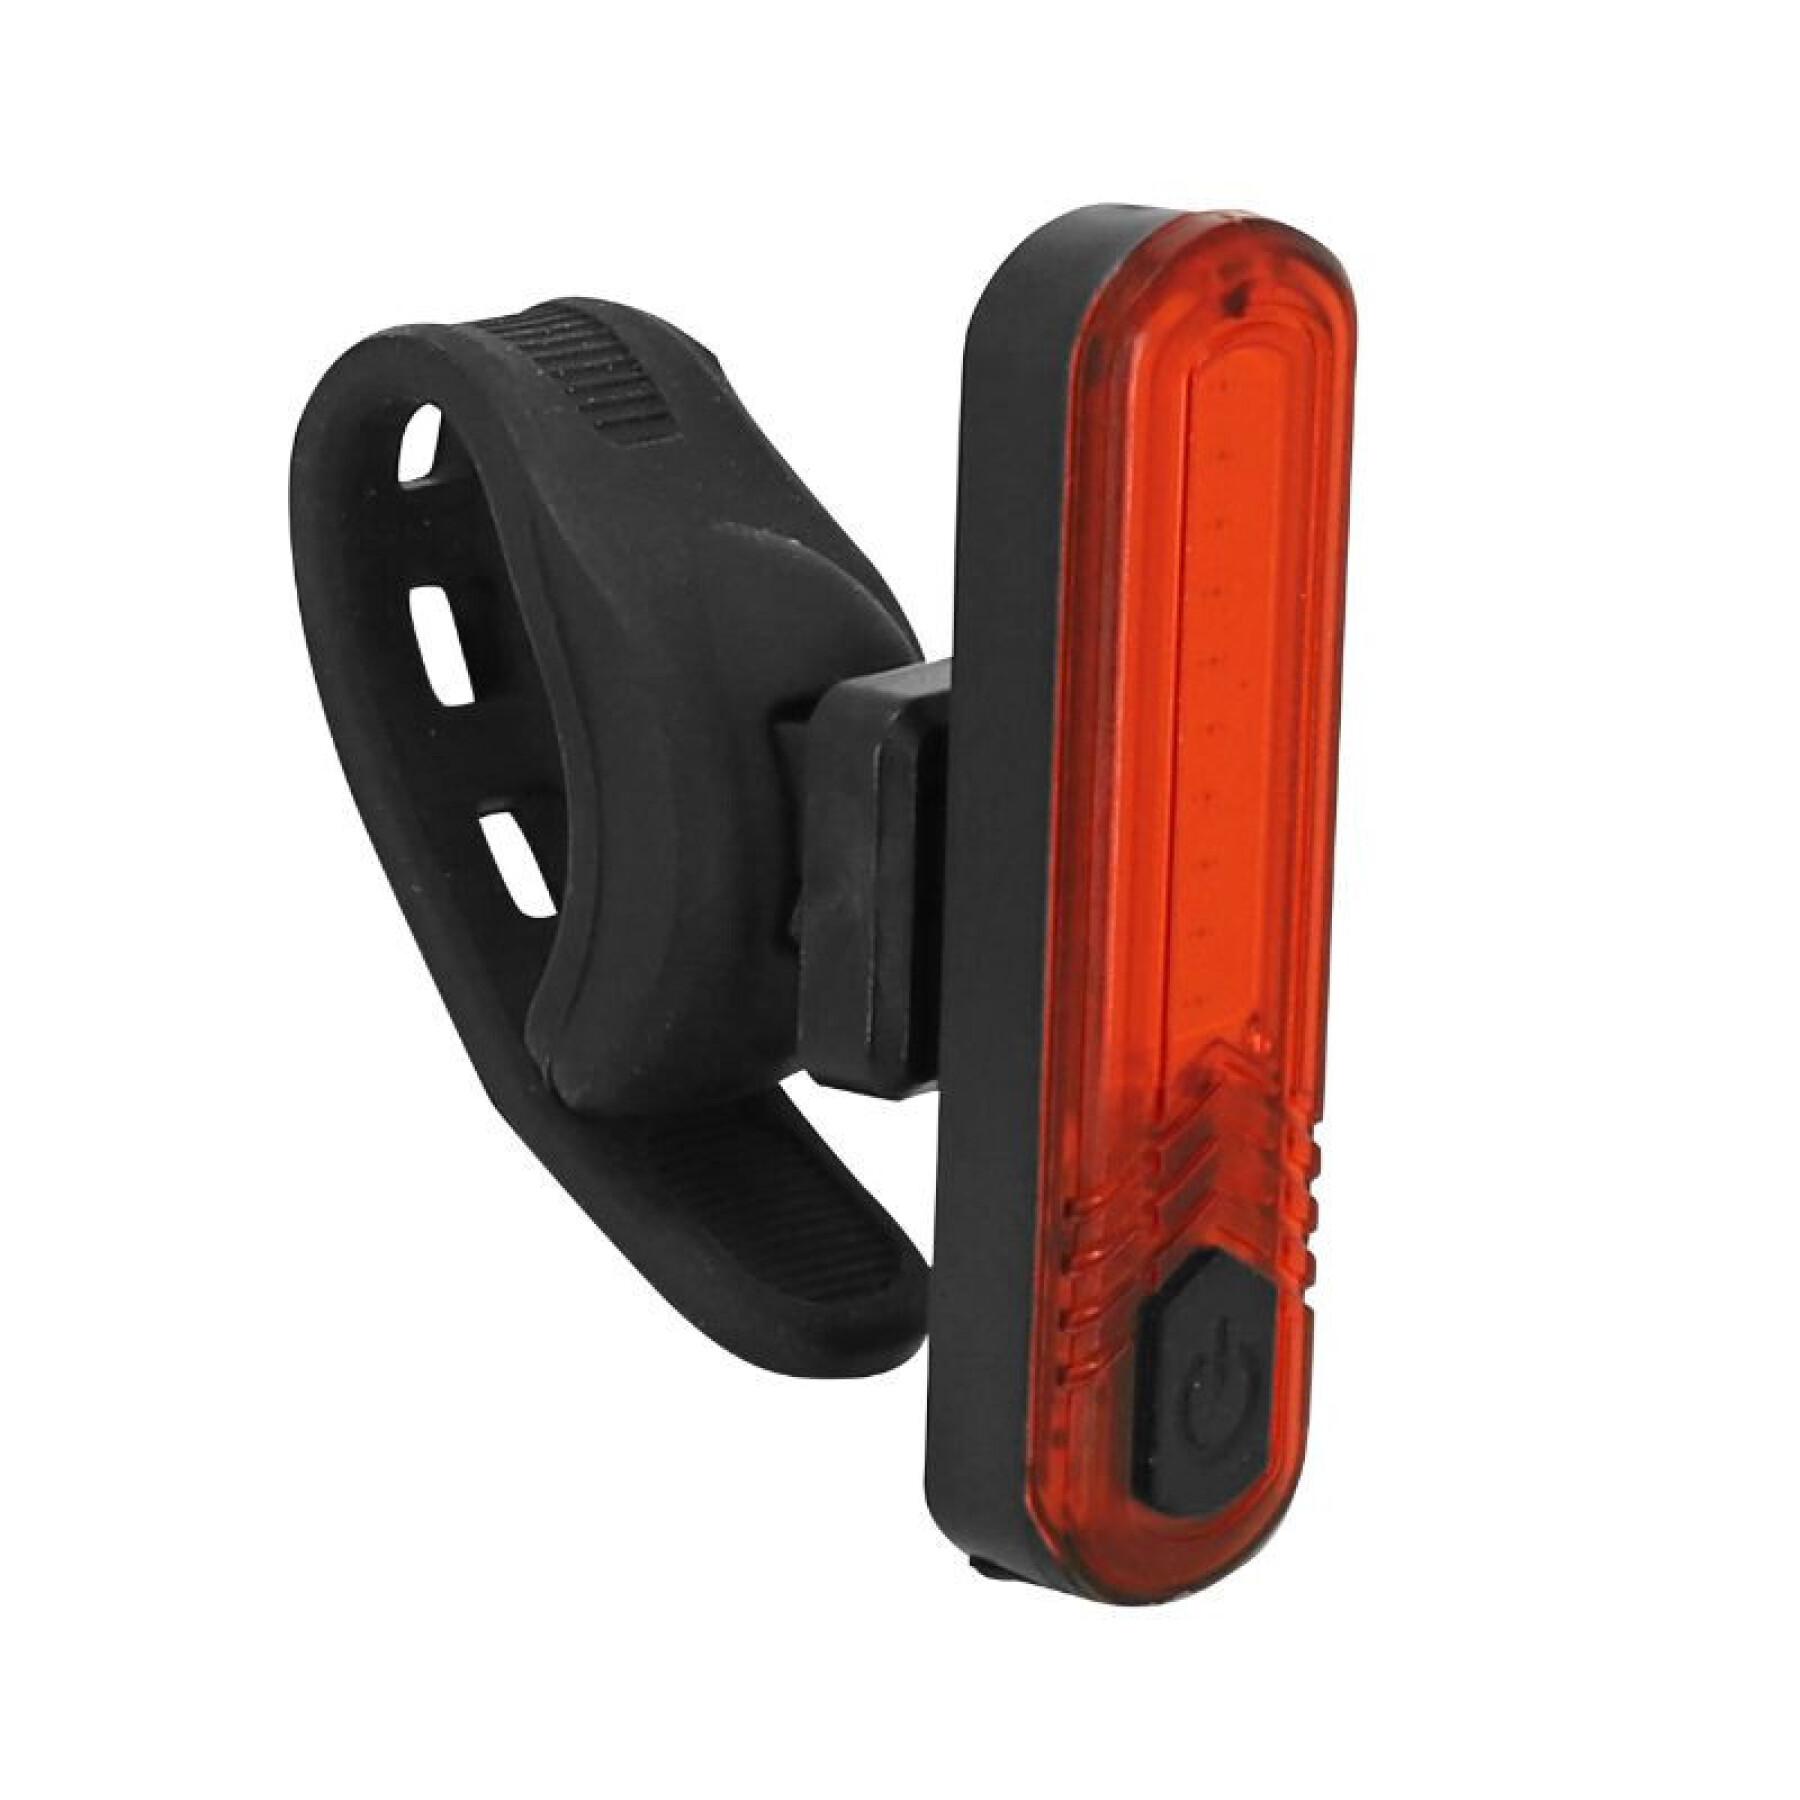 Kit d'éclairage vélo USB sur cintre-tige de selle Leds (livré avec fixations) - rechargeable USB Newton 70B